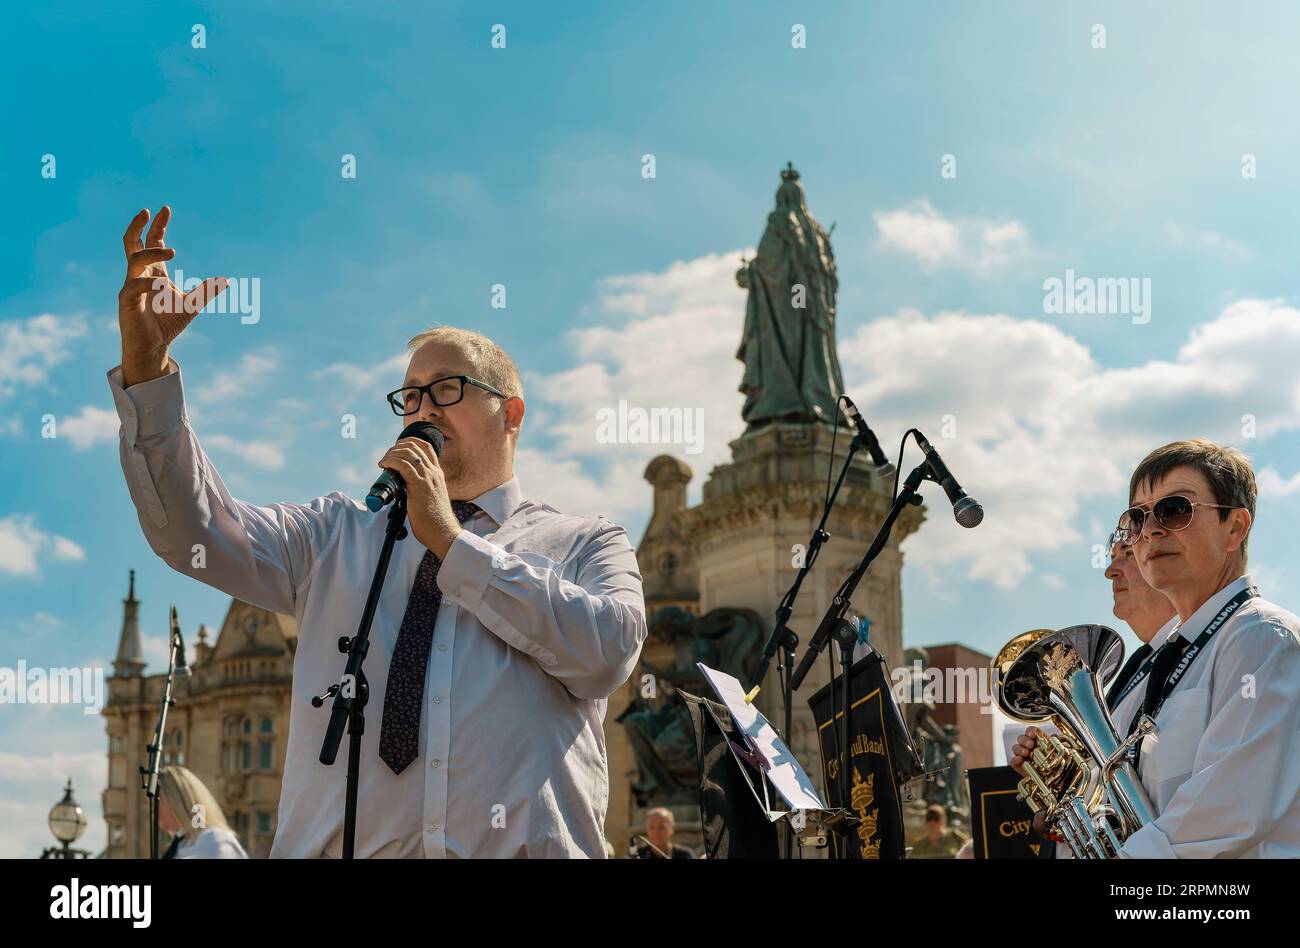 Der Leiter der City of Hull Band stellt Musik der Öffentlichkeit vor, bevor Musiker auf dem Freedom Festival in Hull, Großbritannien, spielen. Stockfoto